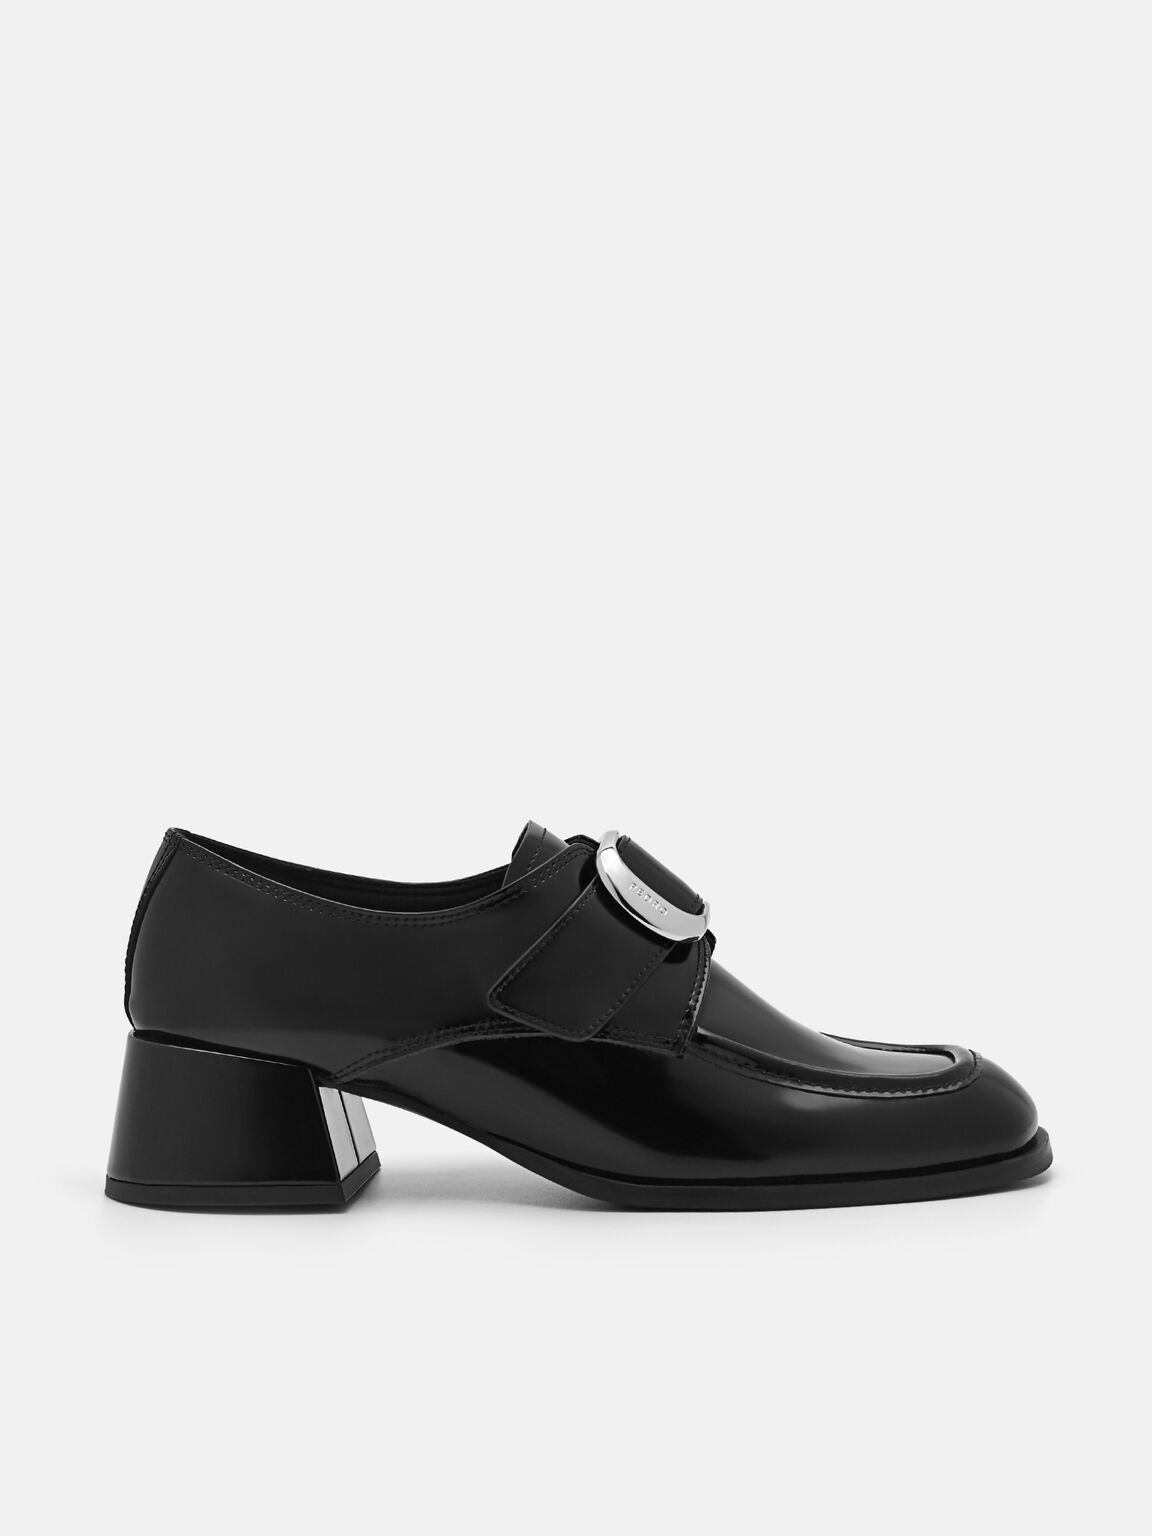 Eden Leather Heel Loafers, Black